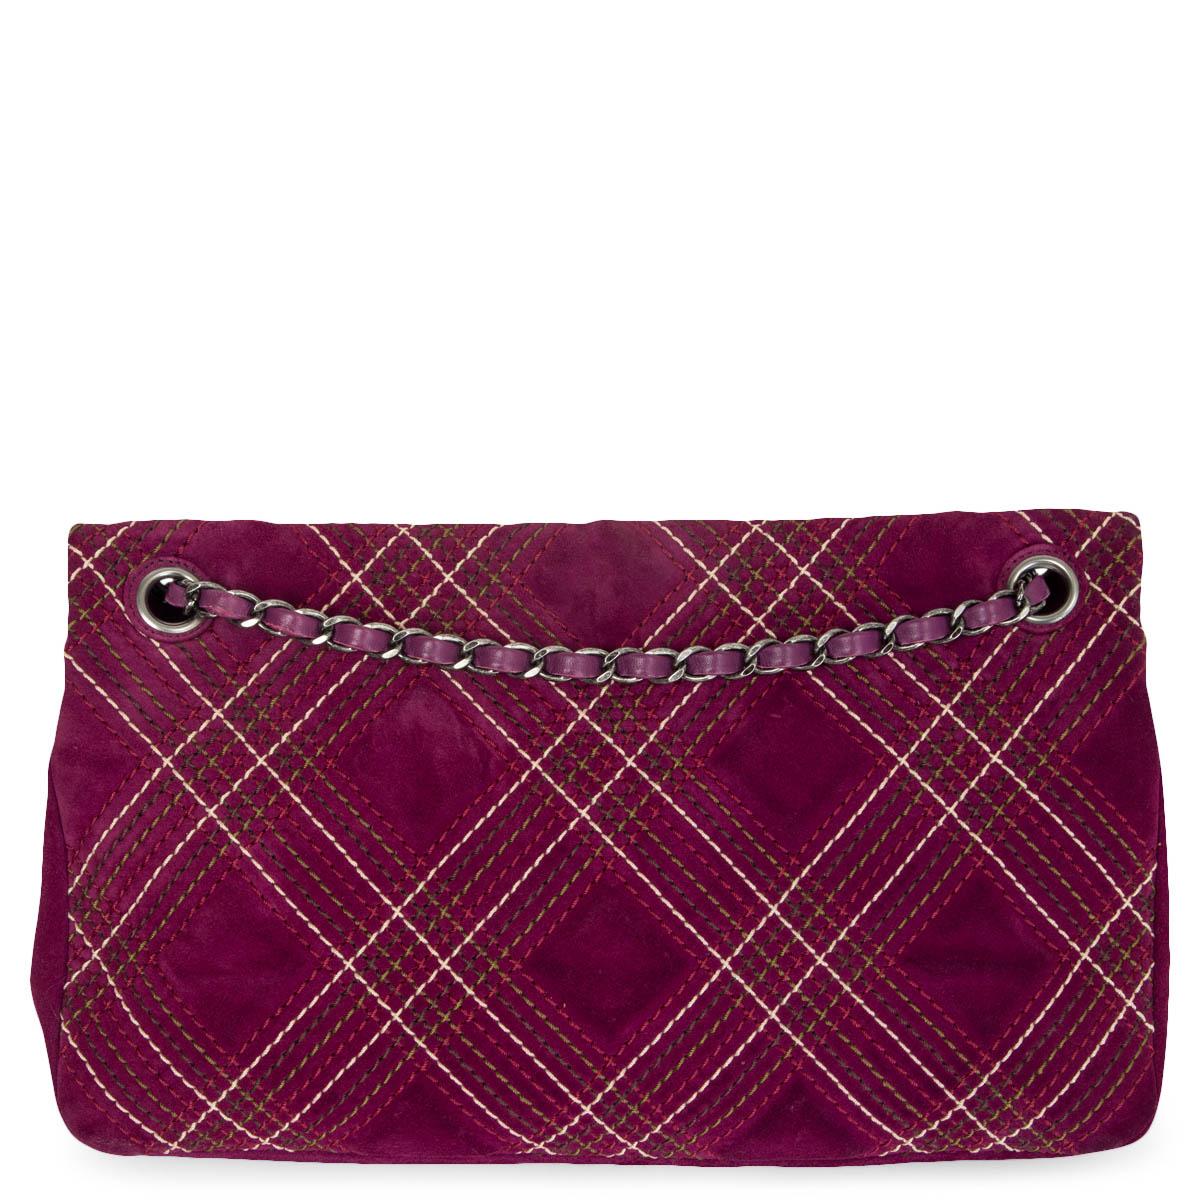 Purple CHANLE purple suede 2013 EDINBURGH SALTIRE MEDIUM FLAP Shoulder Bag 13A For Sale